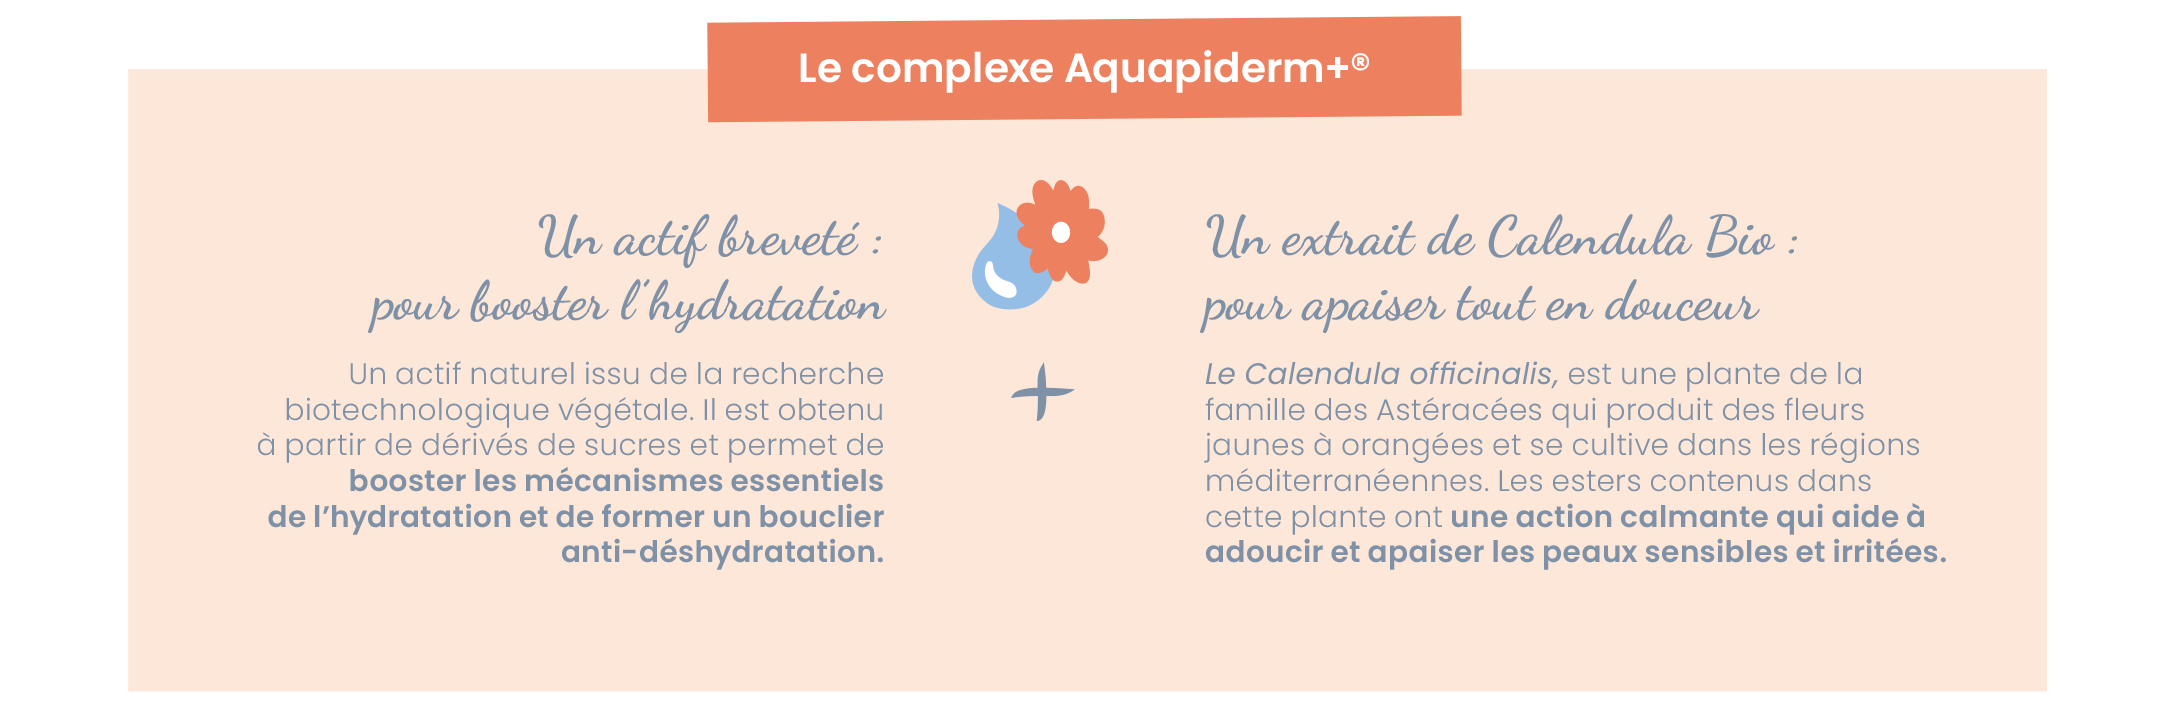 Complexe Aquapiderm 2.png